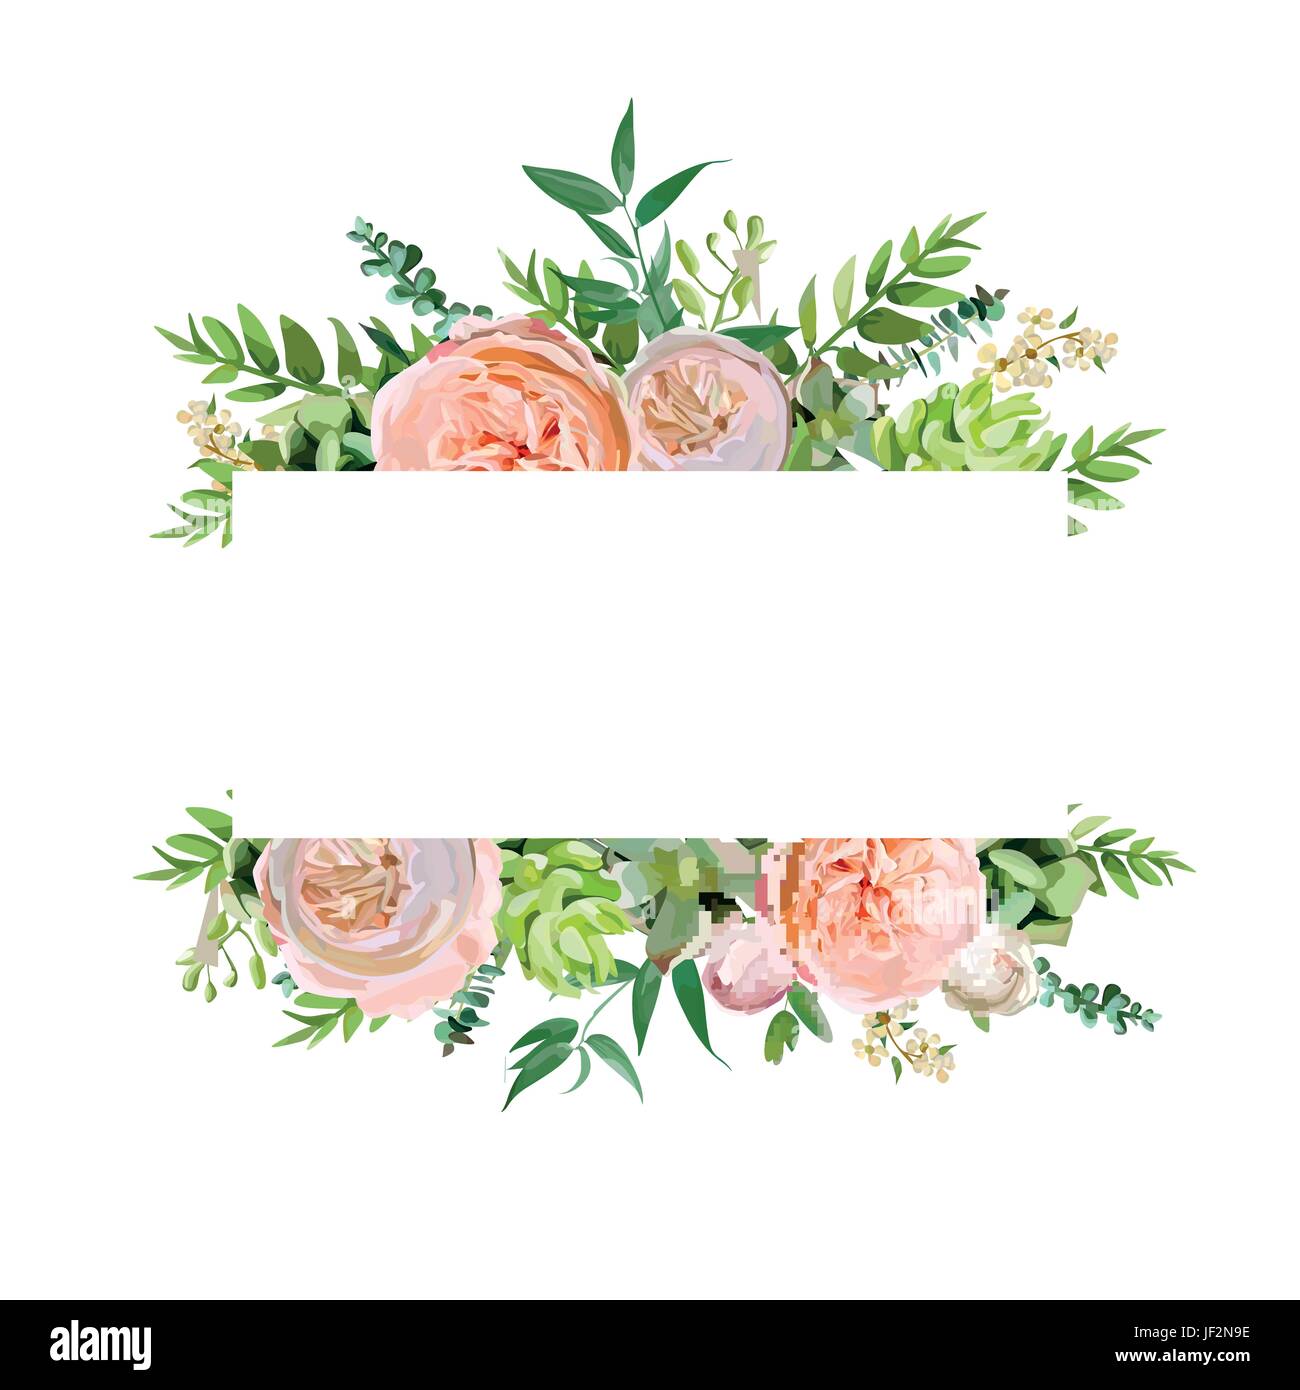 Vektor floralen Design horizontale Kartendesign. Weiche rosa Pfirsich englischen Garten rose, Eukalyptus grünen Farn saisonale Zweige Blätter-Mix. Gruß invitat Stock Vektor